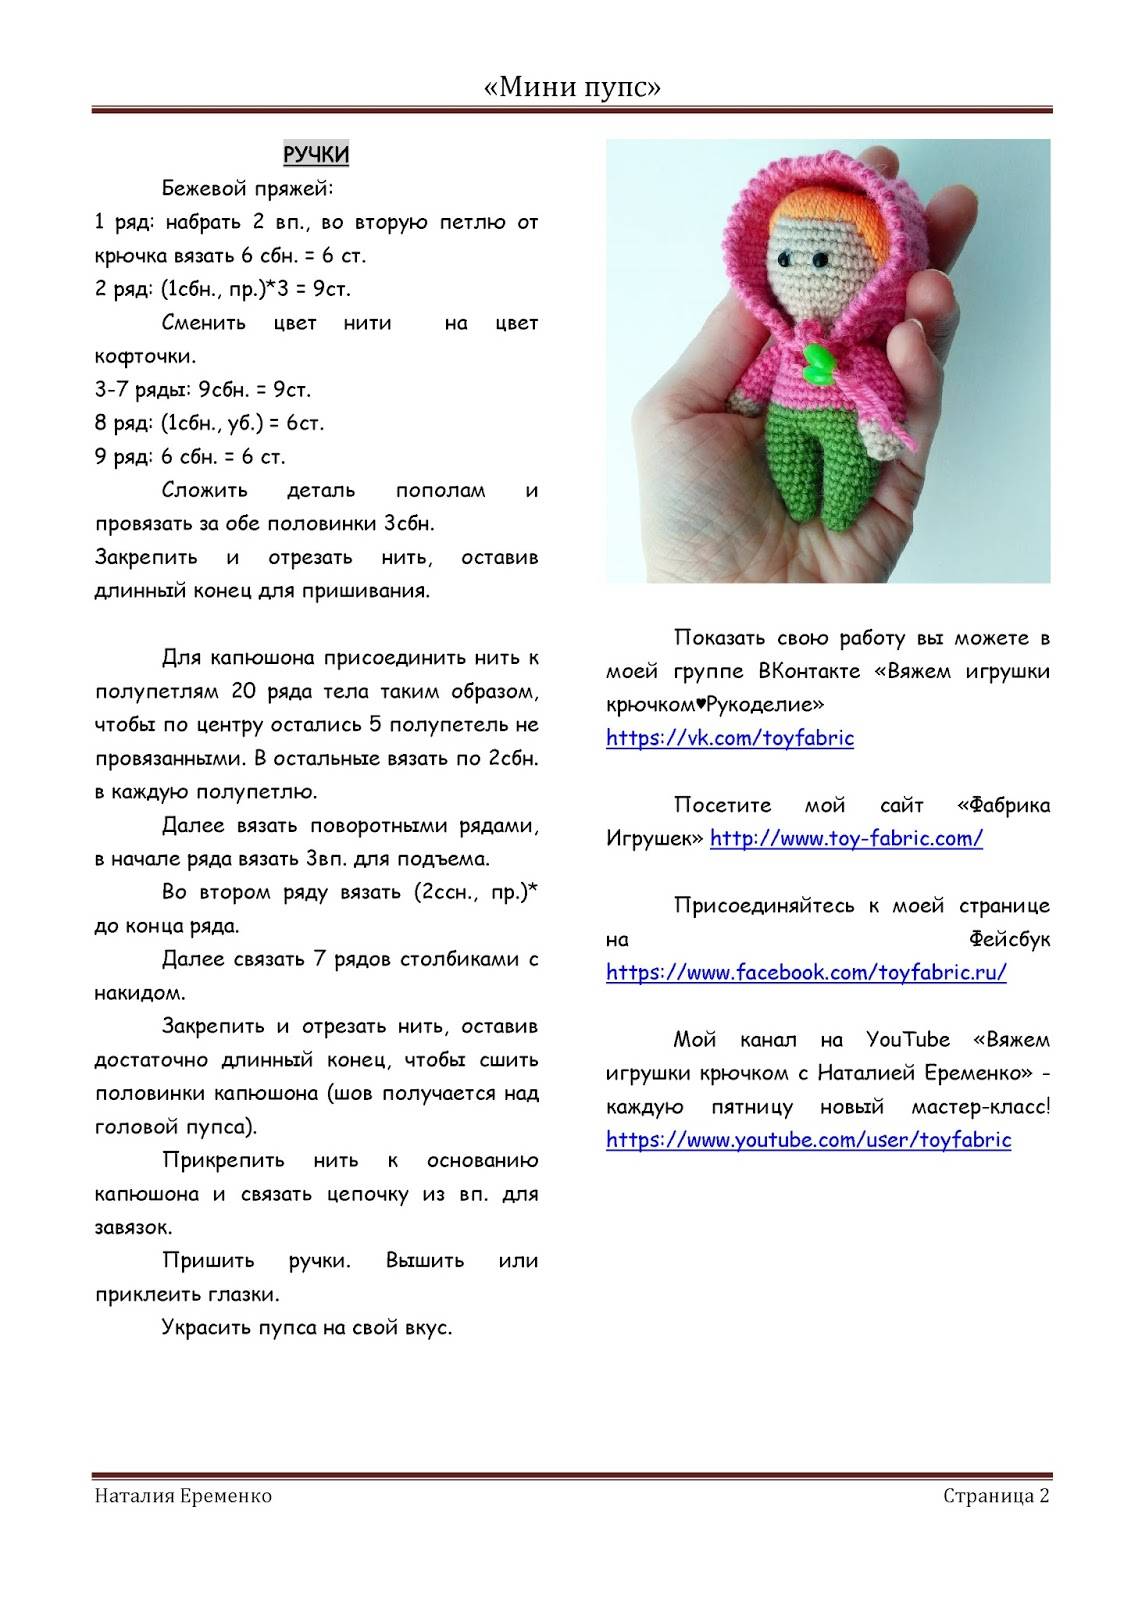 Вязанные куклы крючком: схемы, описание, фото, инструкция